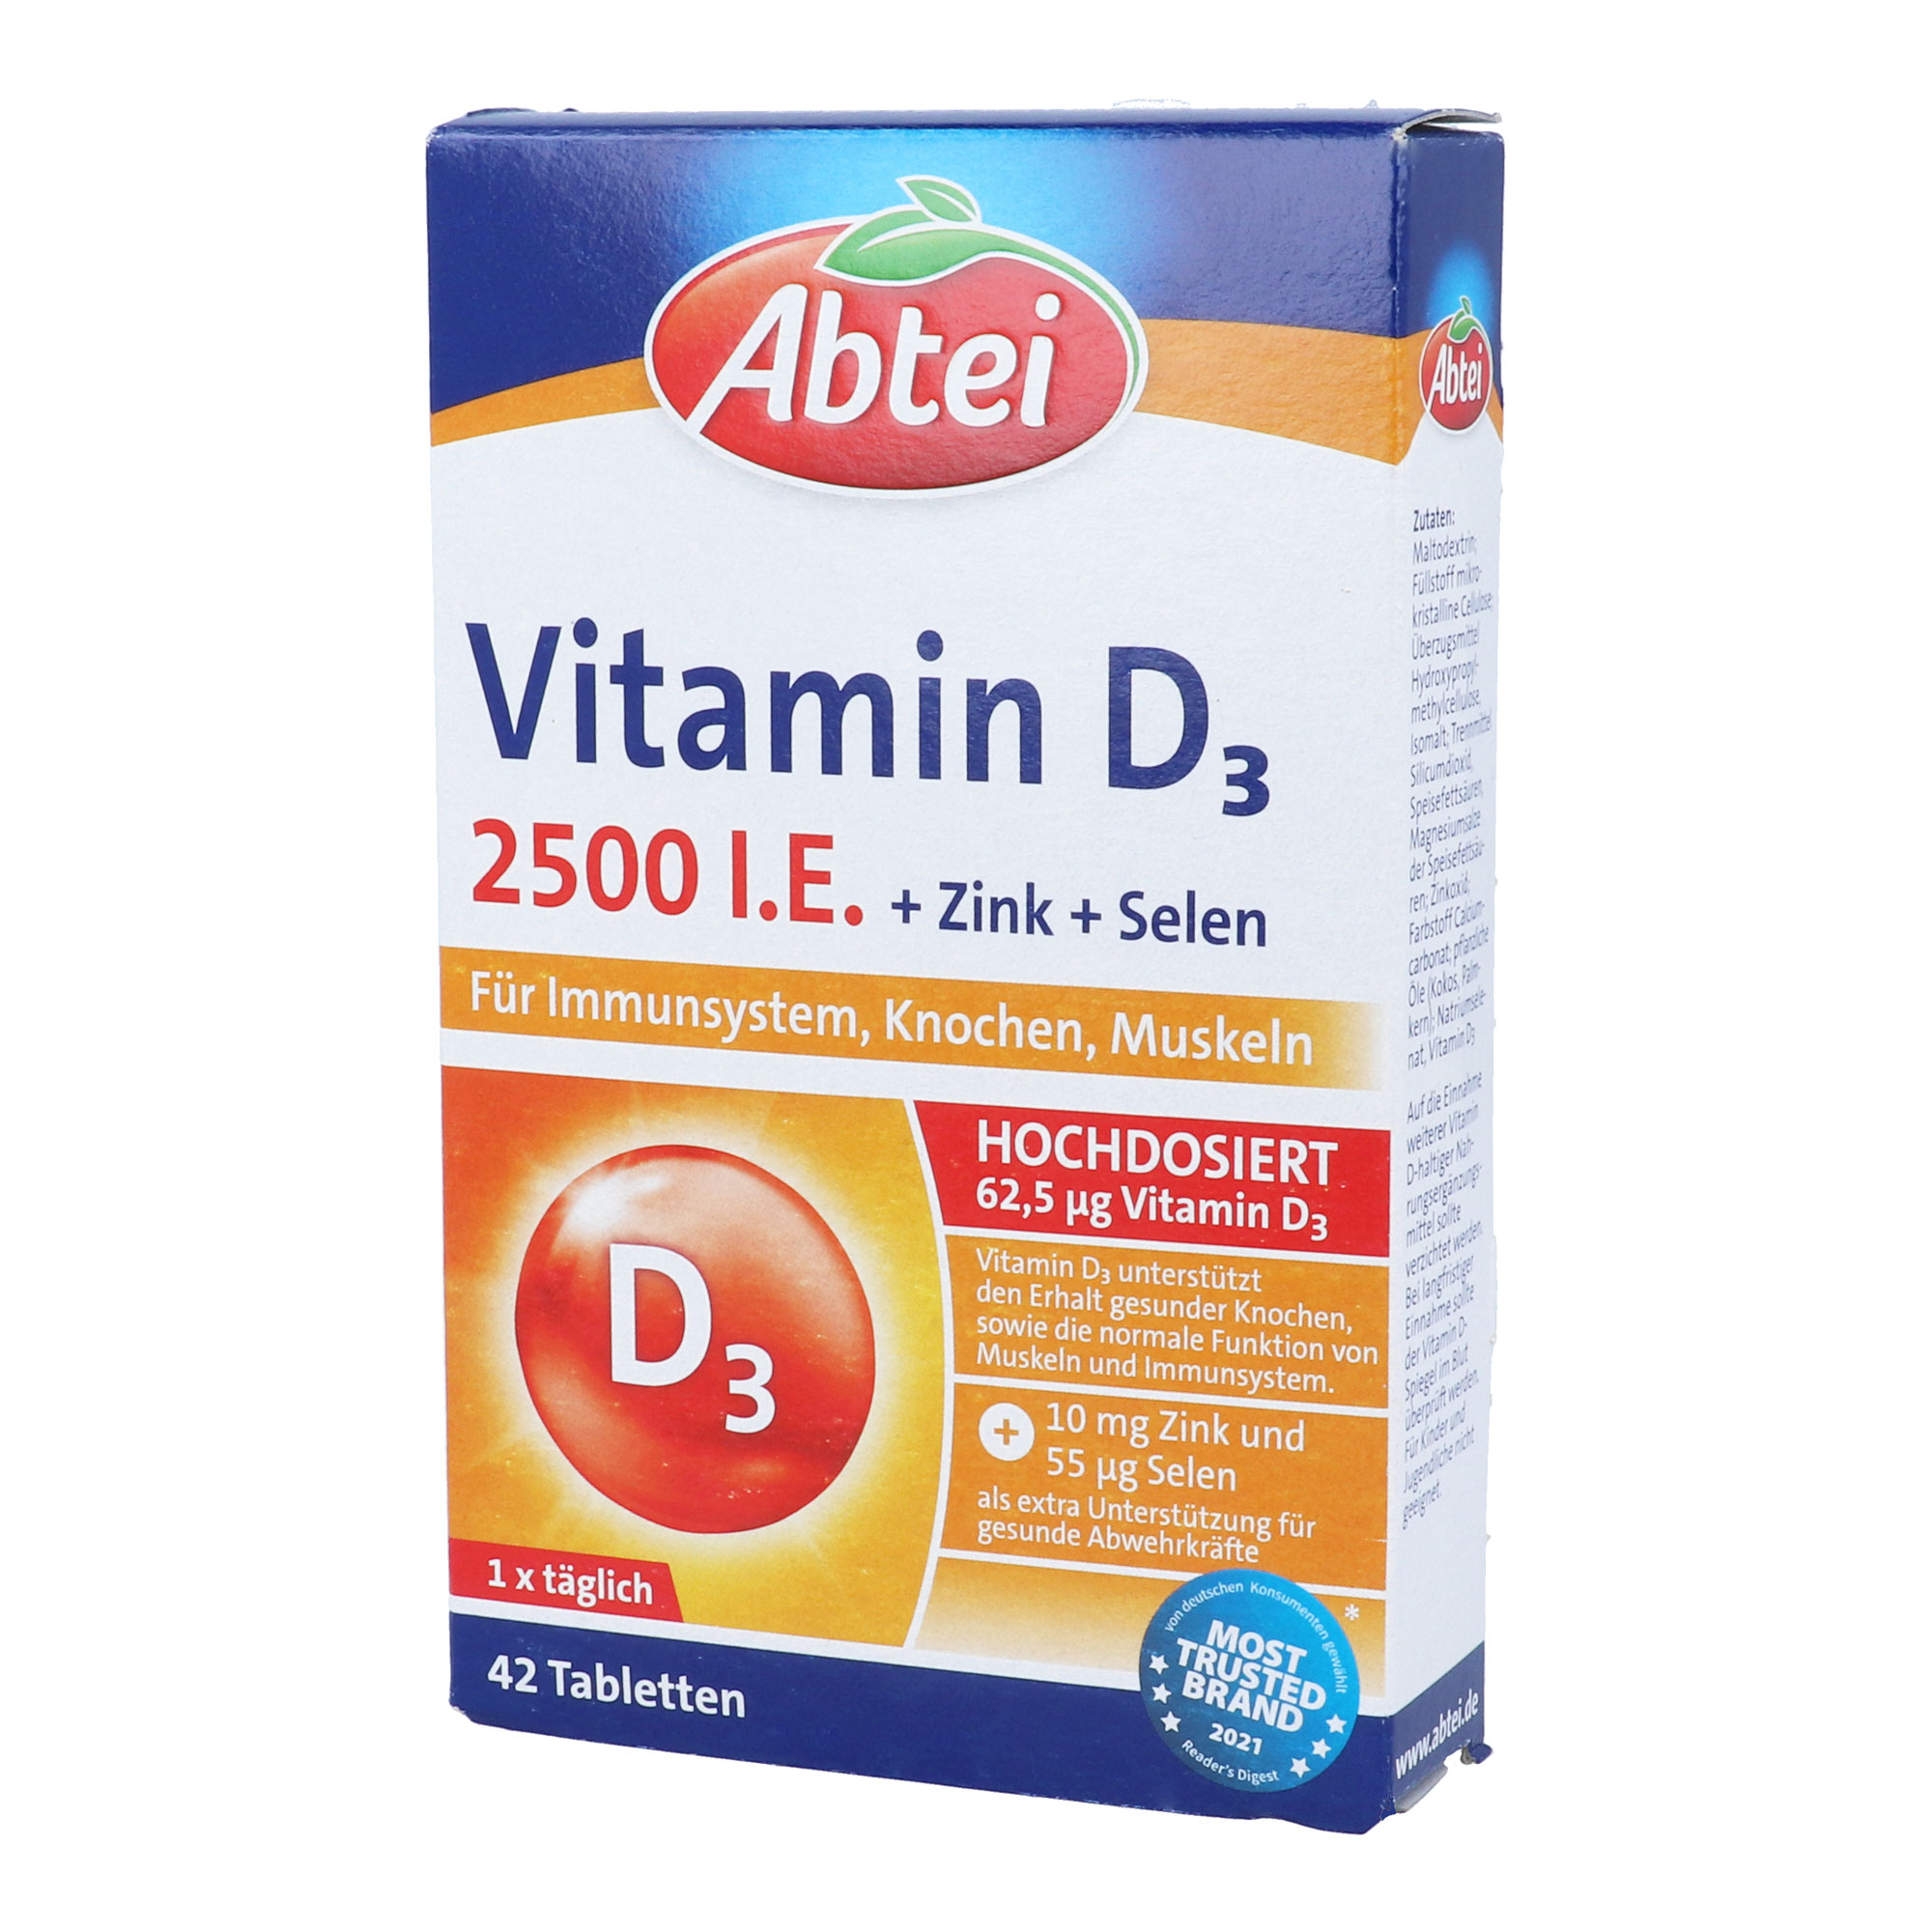 Nahrungsergänzungsmittel mit Vitamin D3, Zink und Selen.